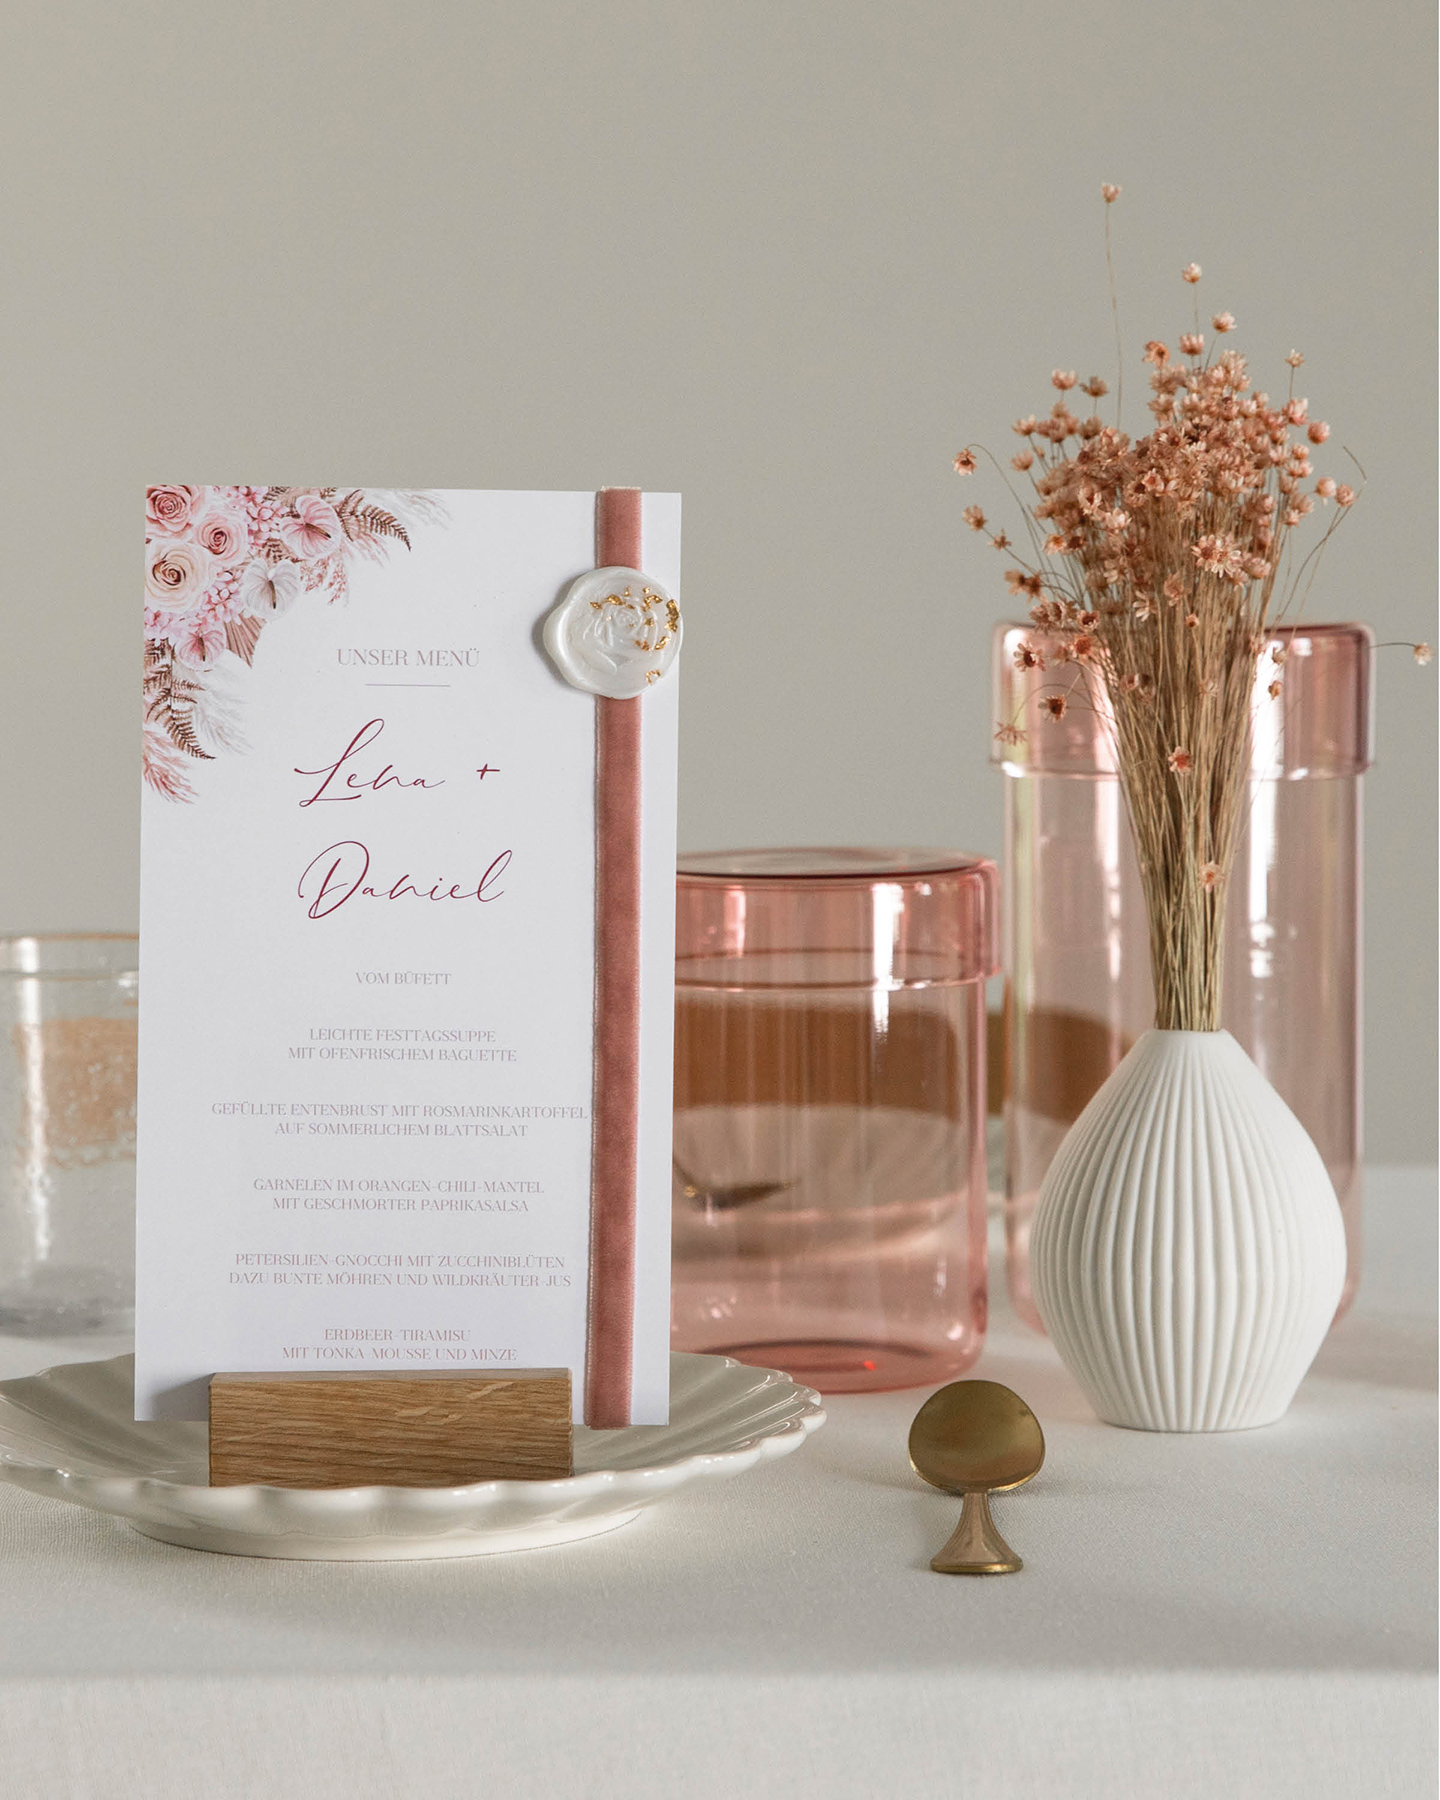 Menükarte verziert mit Wachssiegel, dekoriert auf edel gedeckter Hochzeitsstafel in beige und rosa.